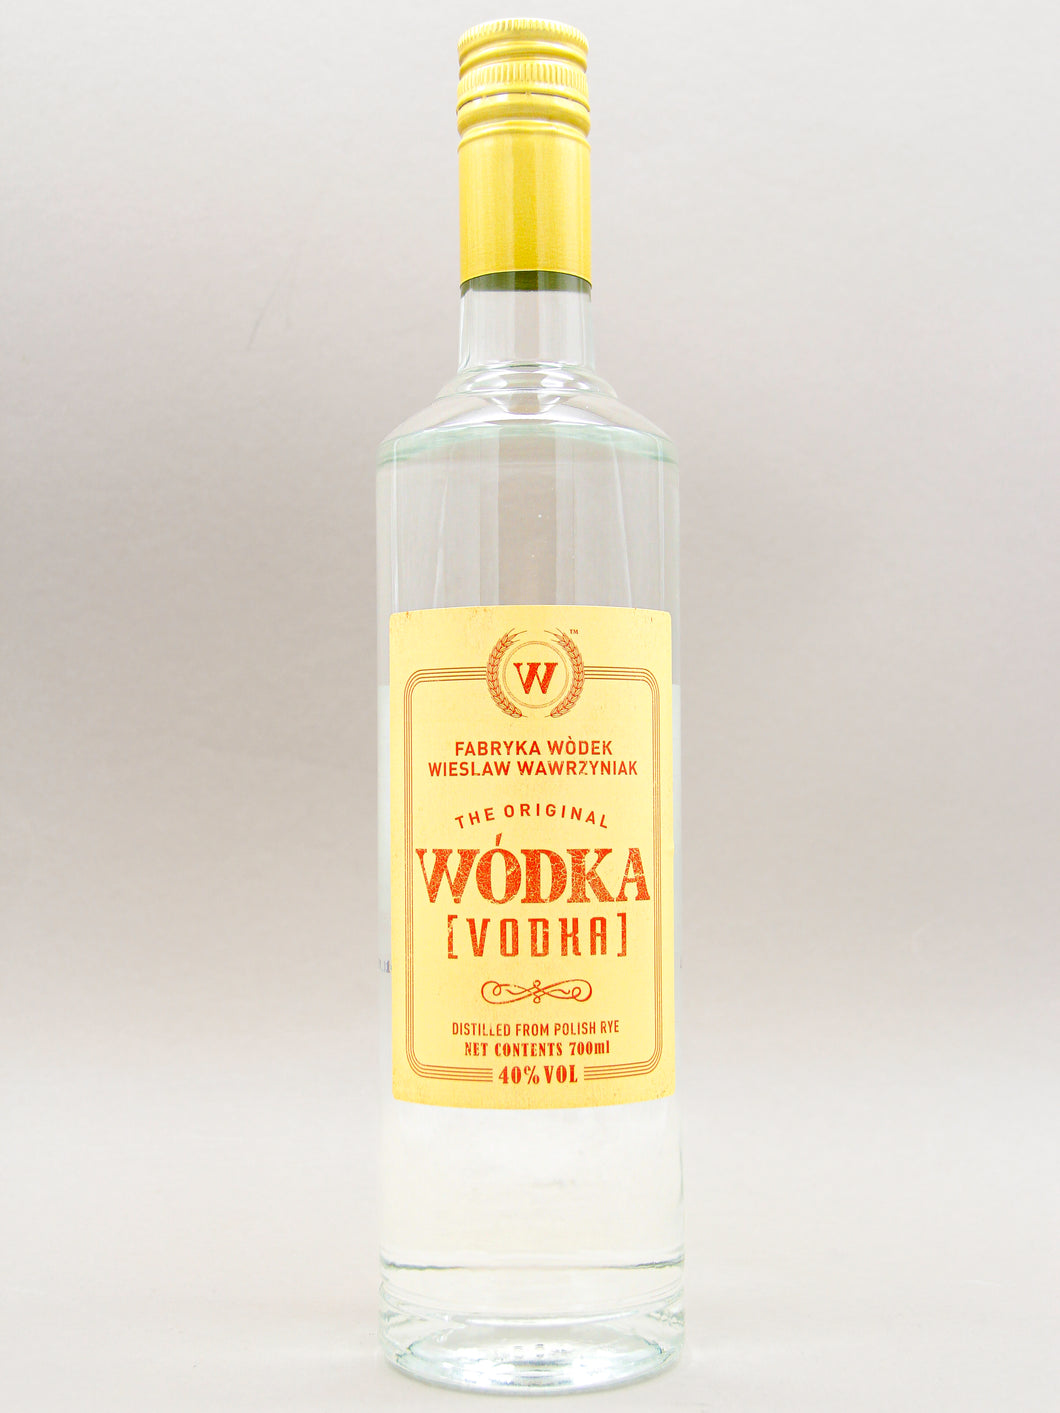 Wodka, Rye Vodka, Poland (40%, 70cl)